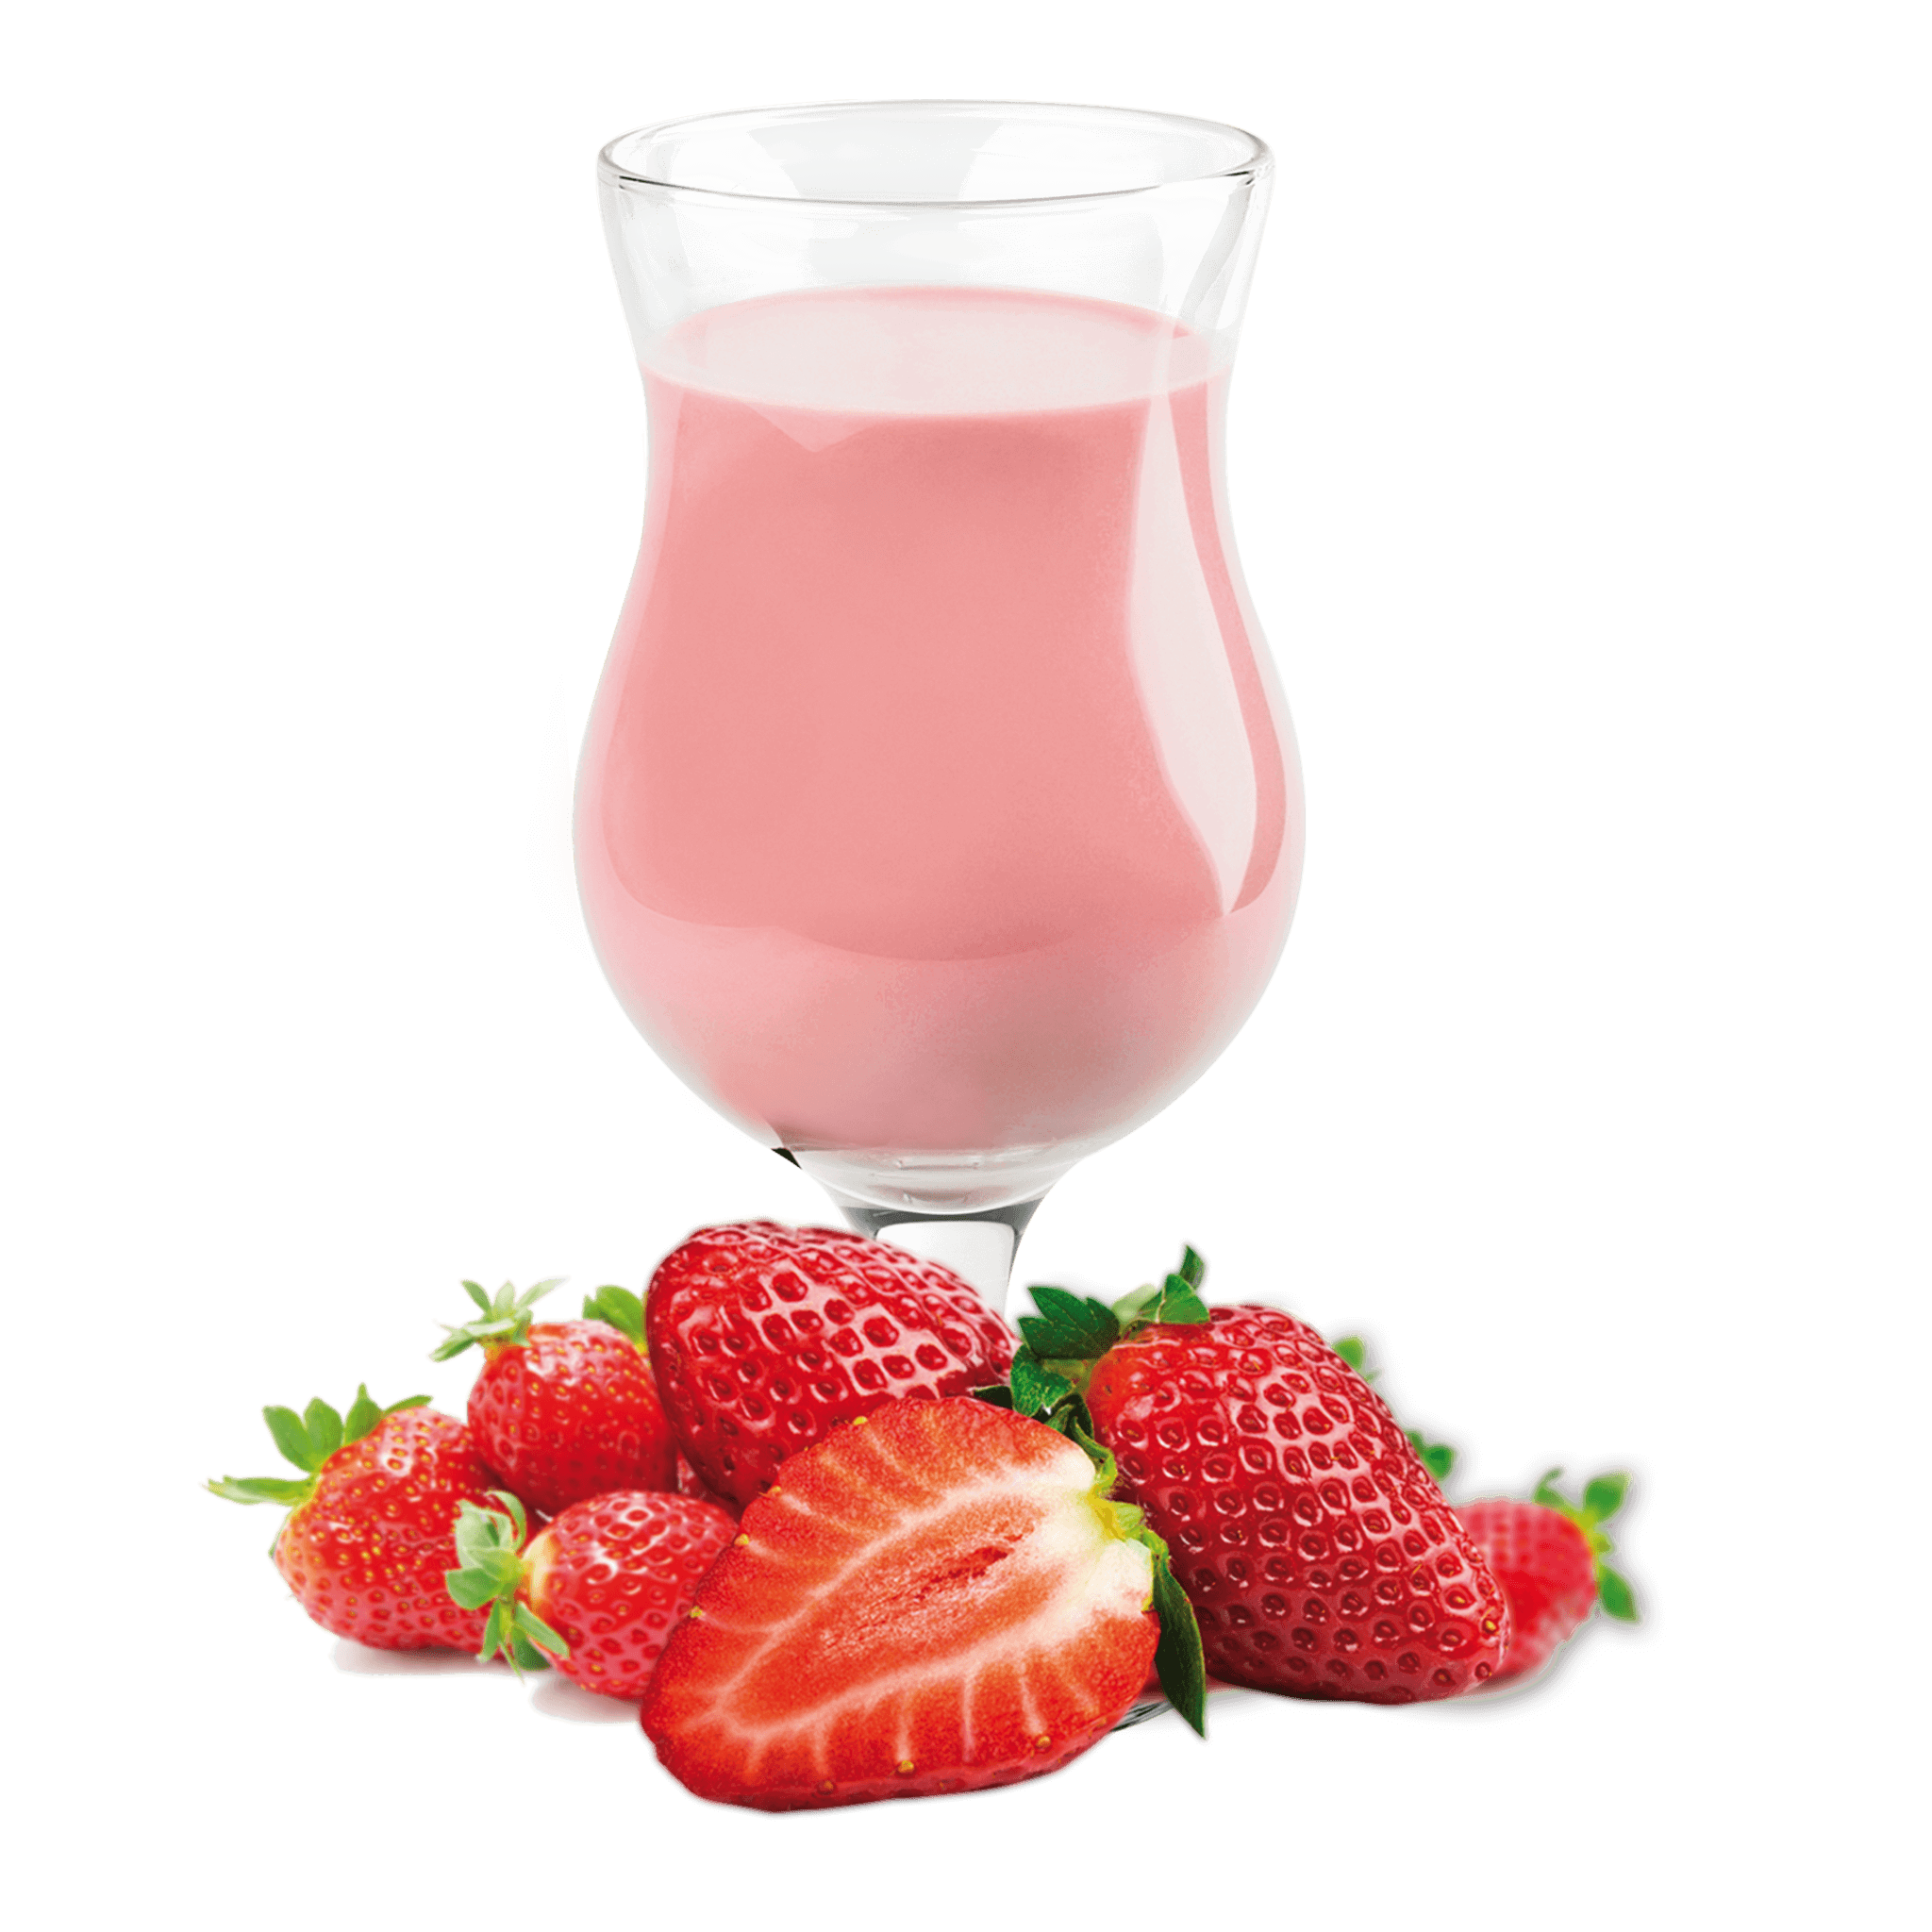 Substitut de repas aux fraises